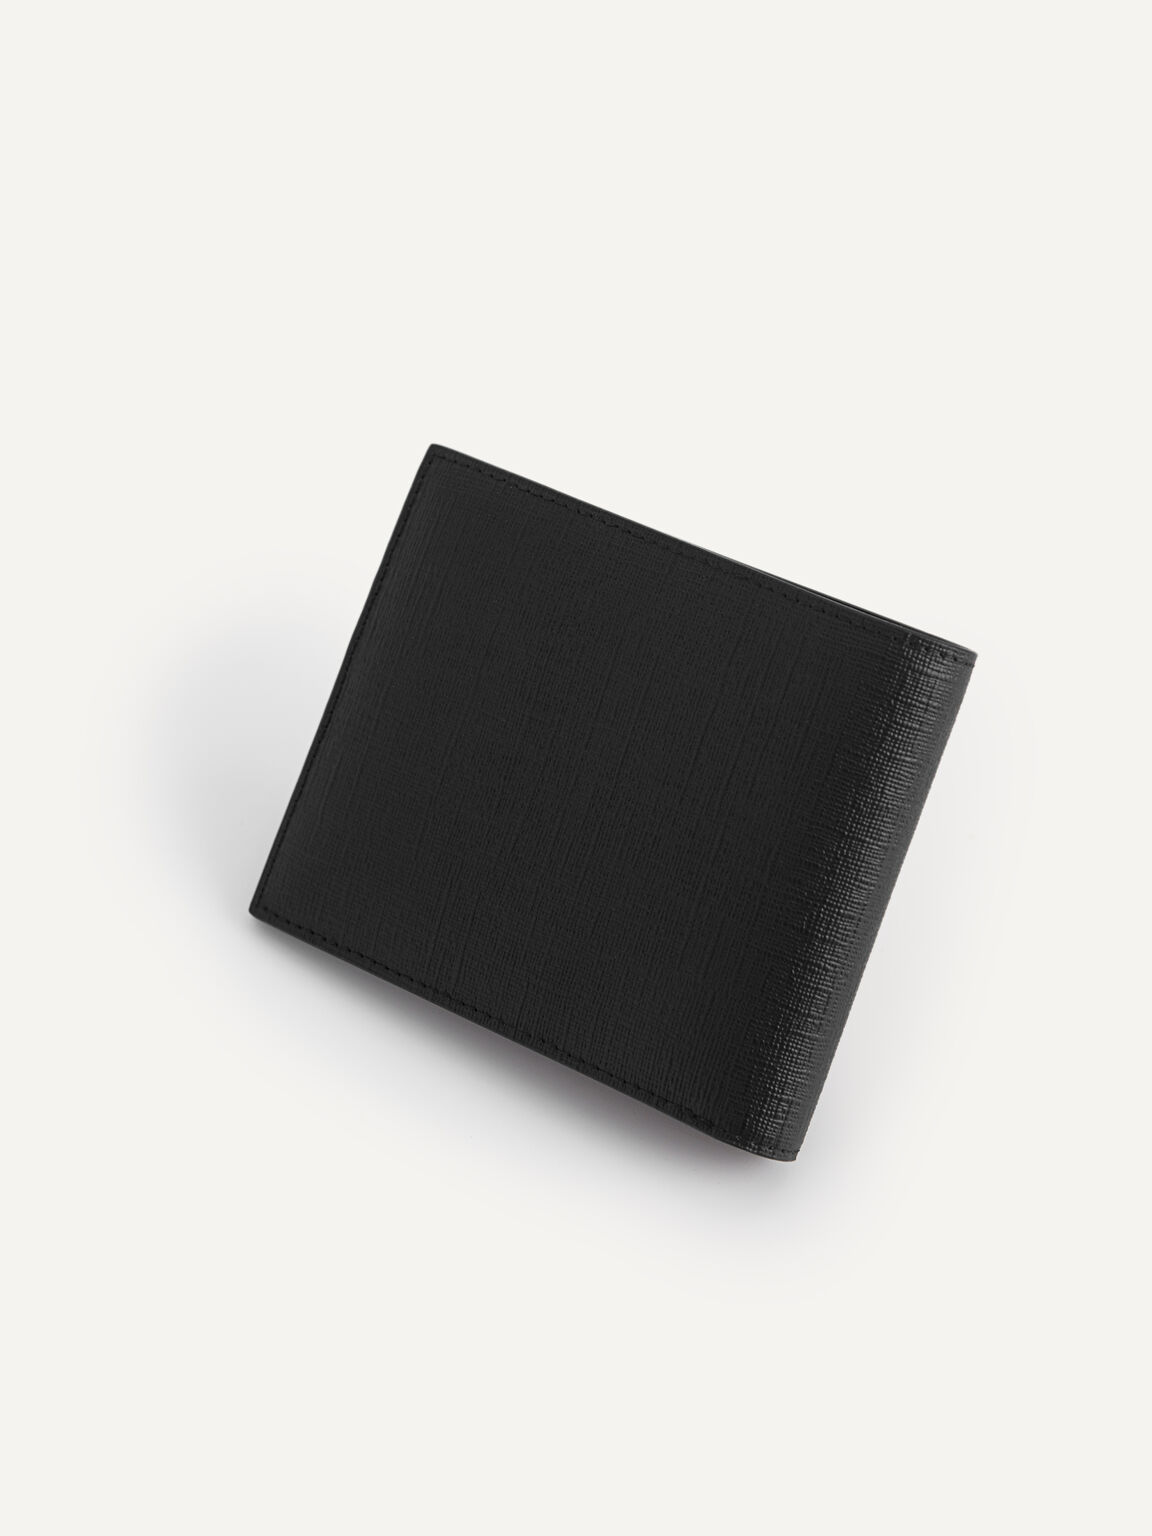 織紋雙折疊皮革錢包, 黑色, hi-res